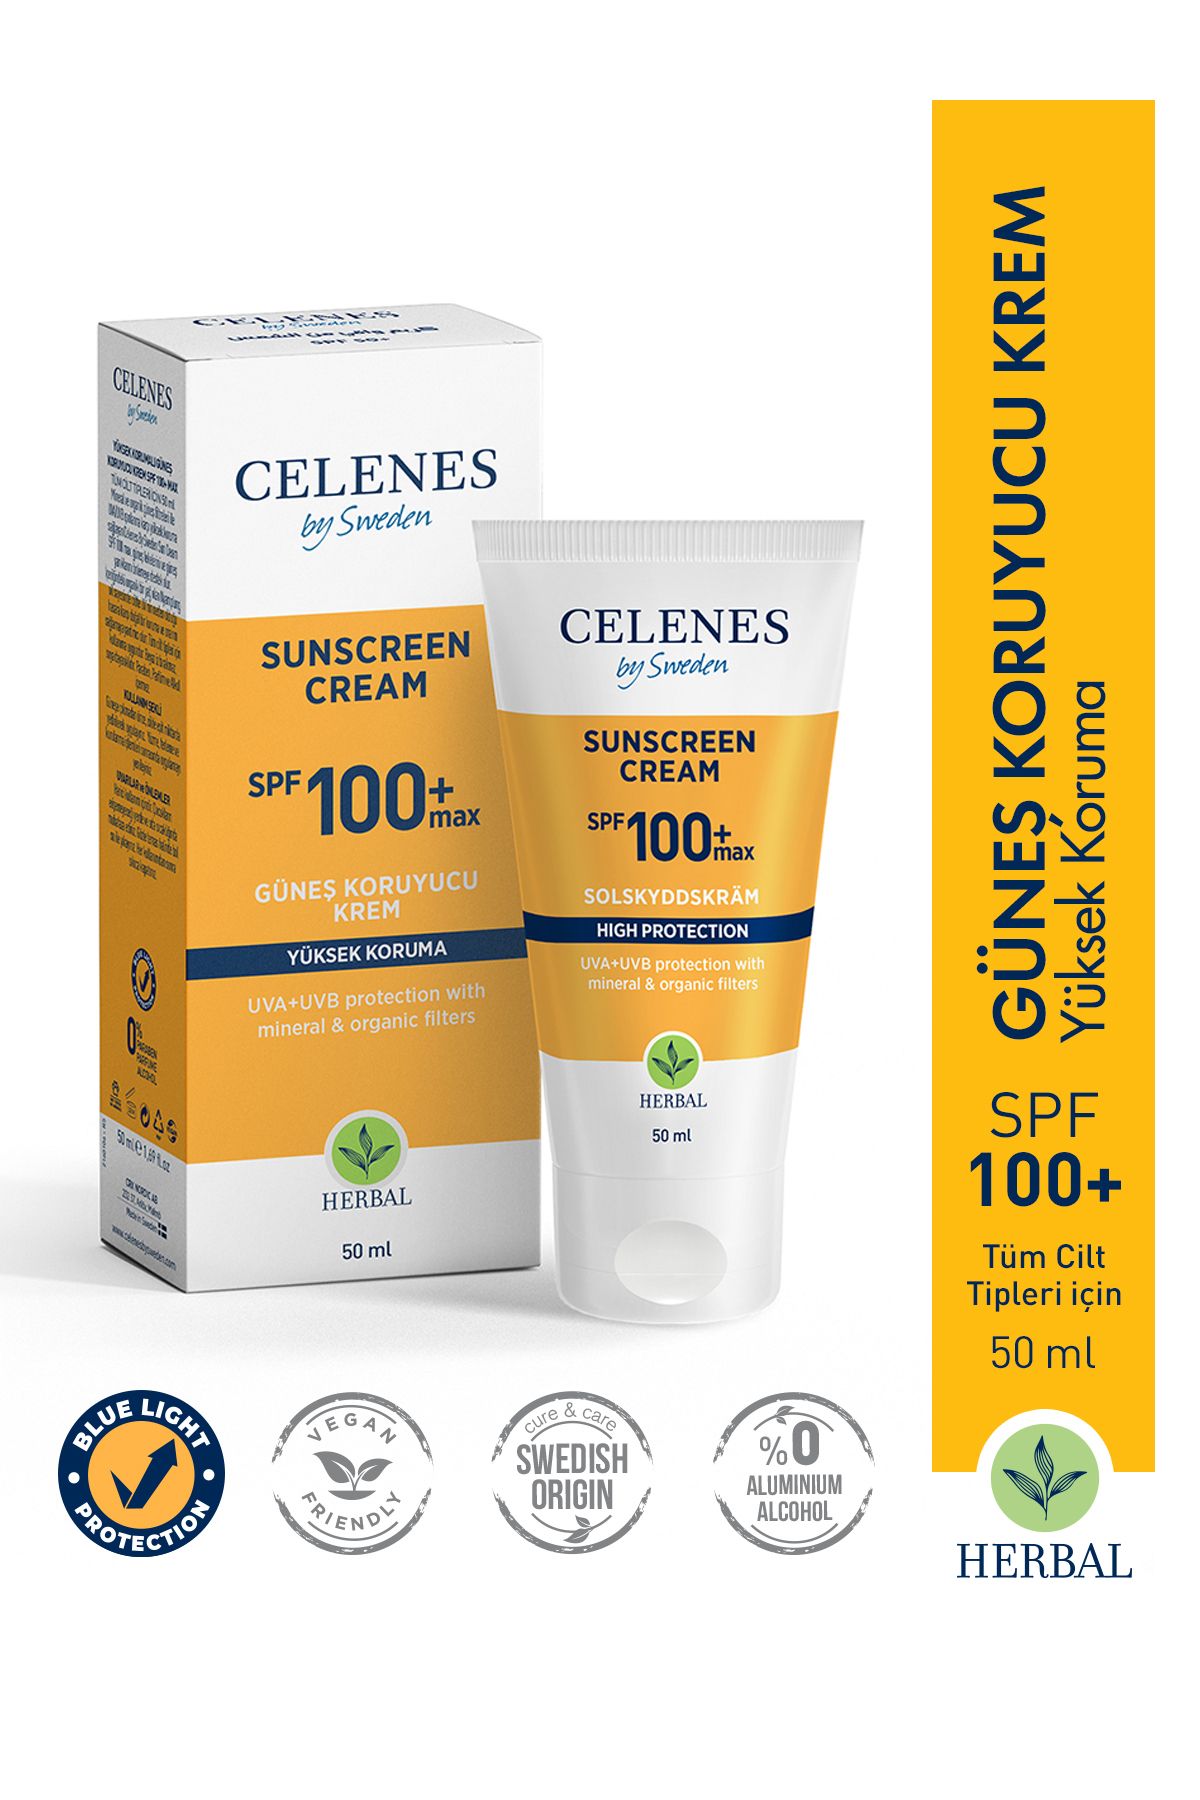 Celenes by Sweden Herbal Güneş Koruma Kremi 100 Max Spf 50ml / Tüm Cilt Tipleri